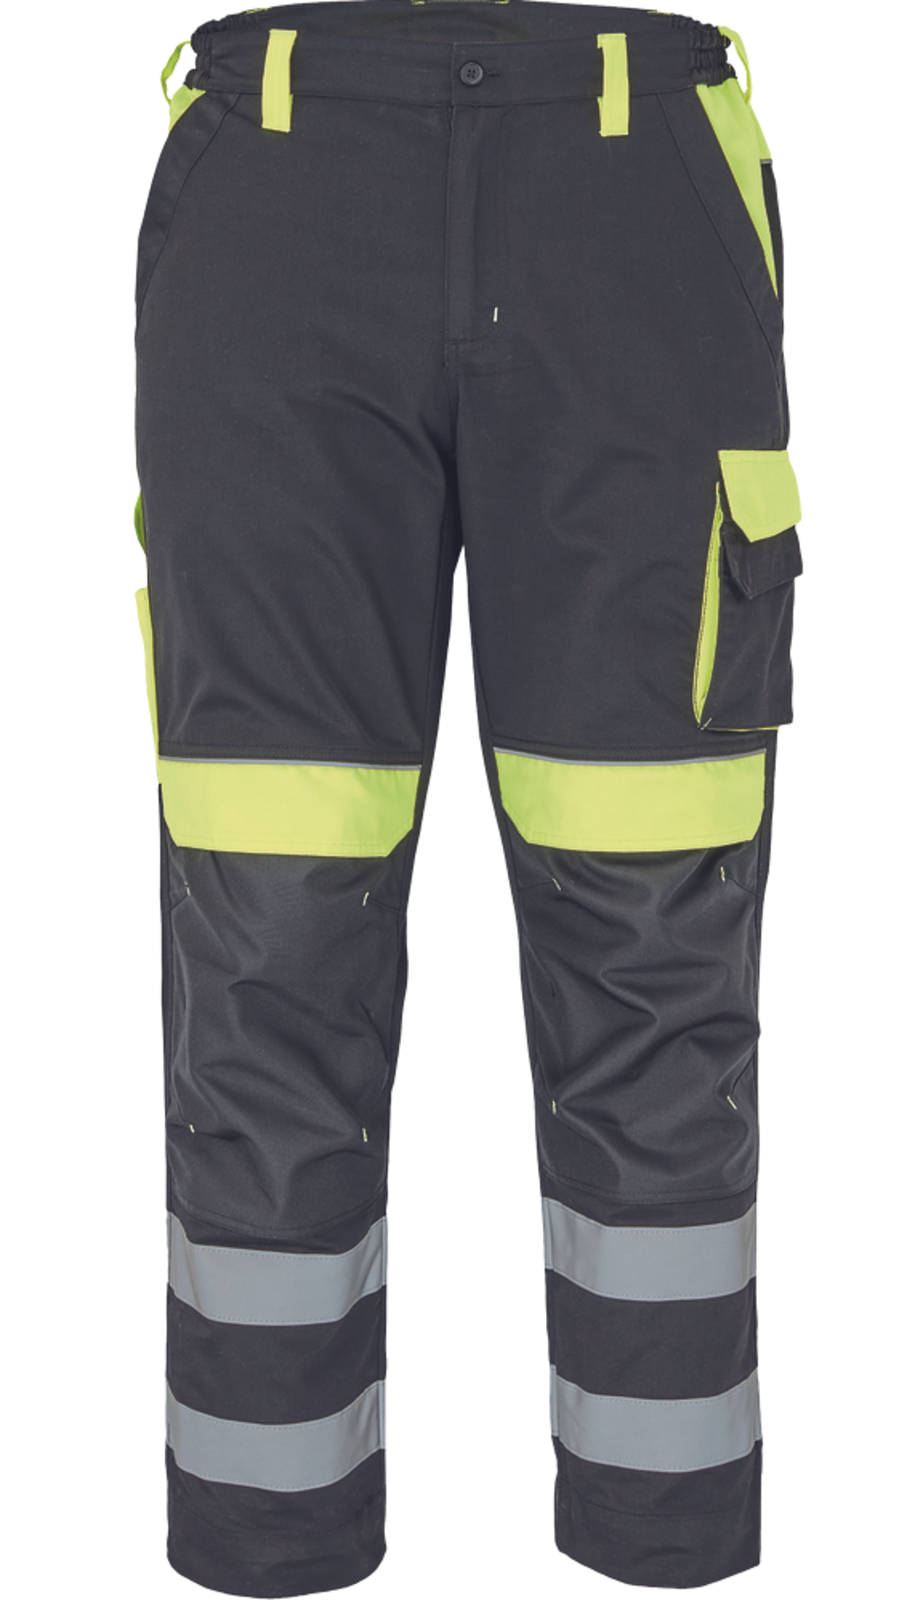 Pracovné nohavice s reflexnými pruhmi Cerva Max Vivo Reflex  - veľkosť: 60, farba: čierna/žltá